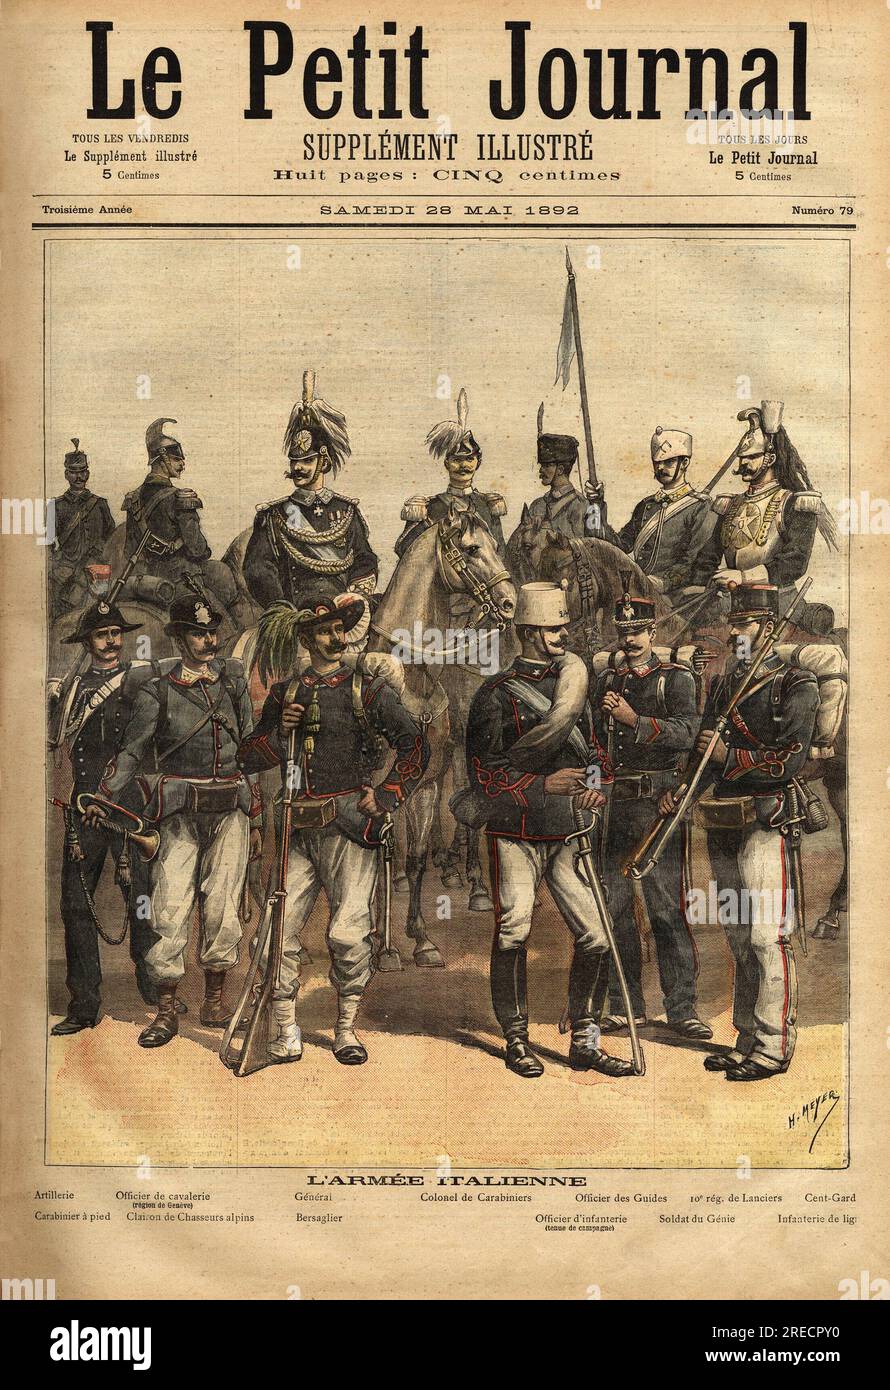 Les uniformes de l'armee italienne, a cheval de gauche a droite: l'artillerie, l'officier de cavalerie, le general, le colonel de carabiniers, l'officier des guides, le 10eme regiment de lanciers, le cent-gard. Debout de gauche a droite: le carabinier, le clairon de chasseur alpin, le bersaglier (bersaglieri), l'officier d'infanterie, le soldat du genie, l'infanterie de ligne. Gravure in 'Le petit journal illustre' 28051892. Stock Photo